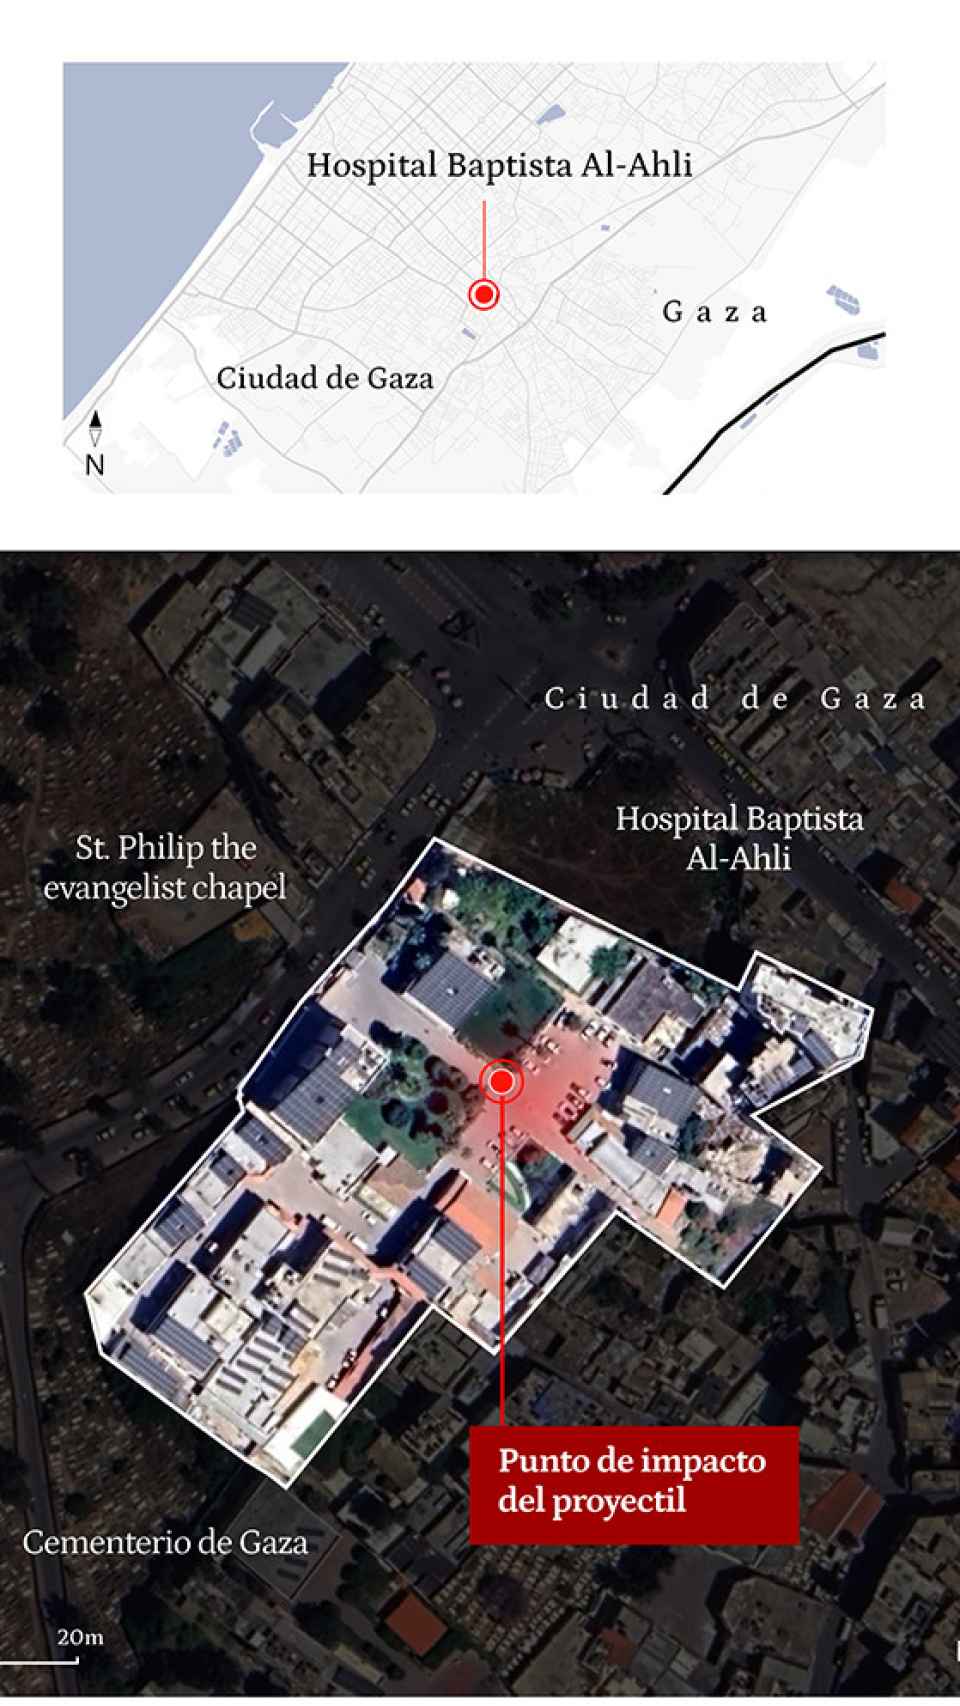 Mapa de la localización del Hospital Baptista Al-Ahli en la ciudad de Gaza. Fuente: Elaboración propia.